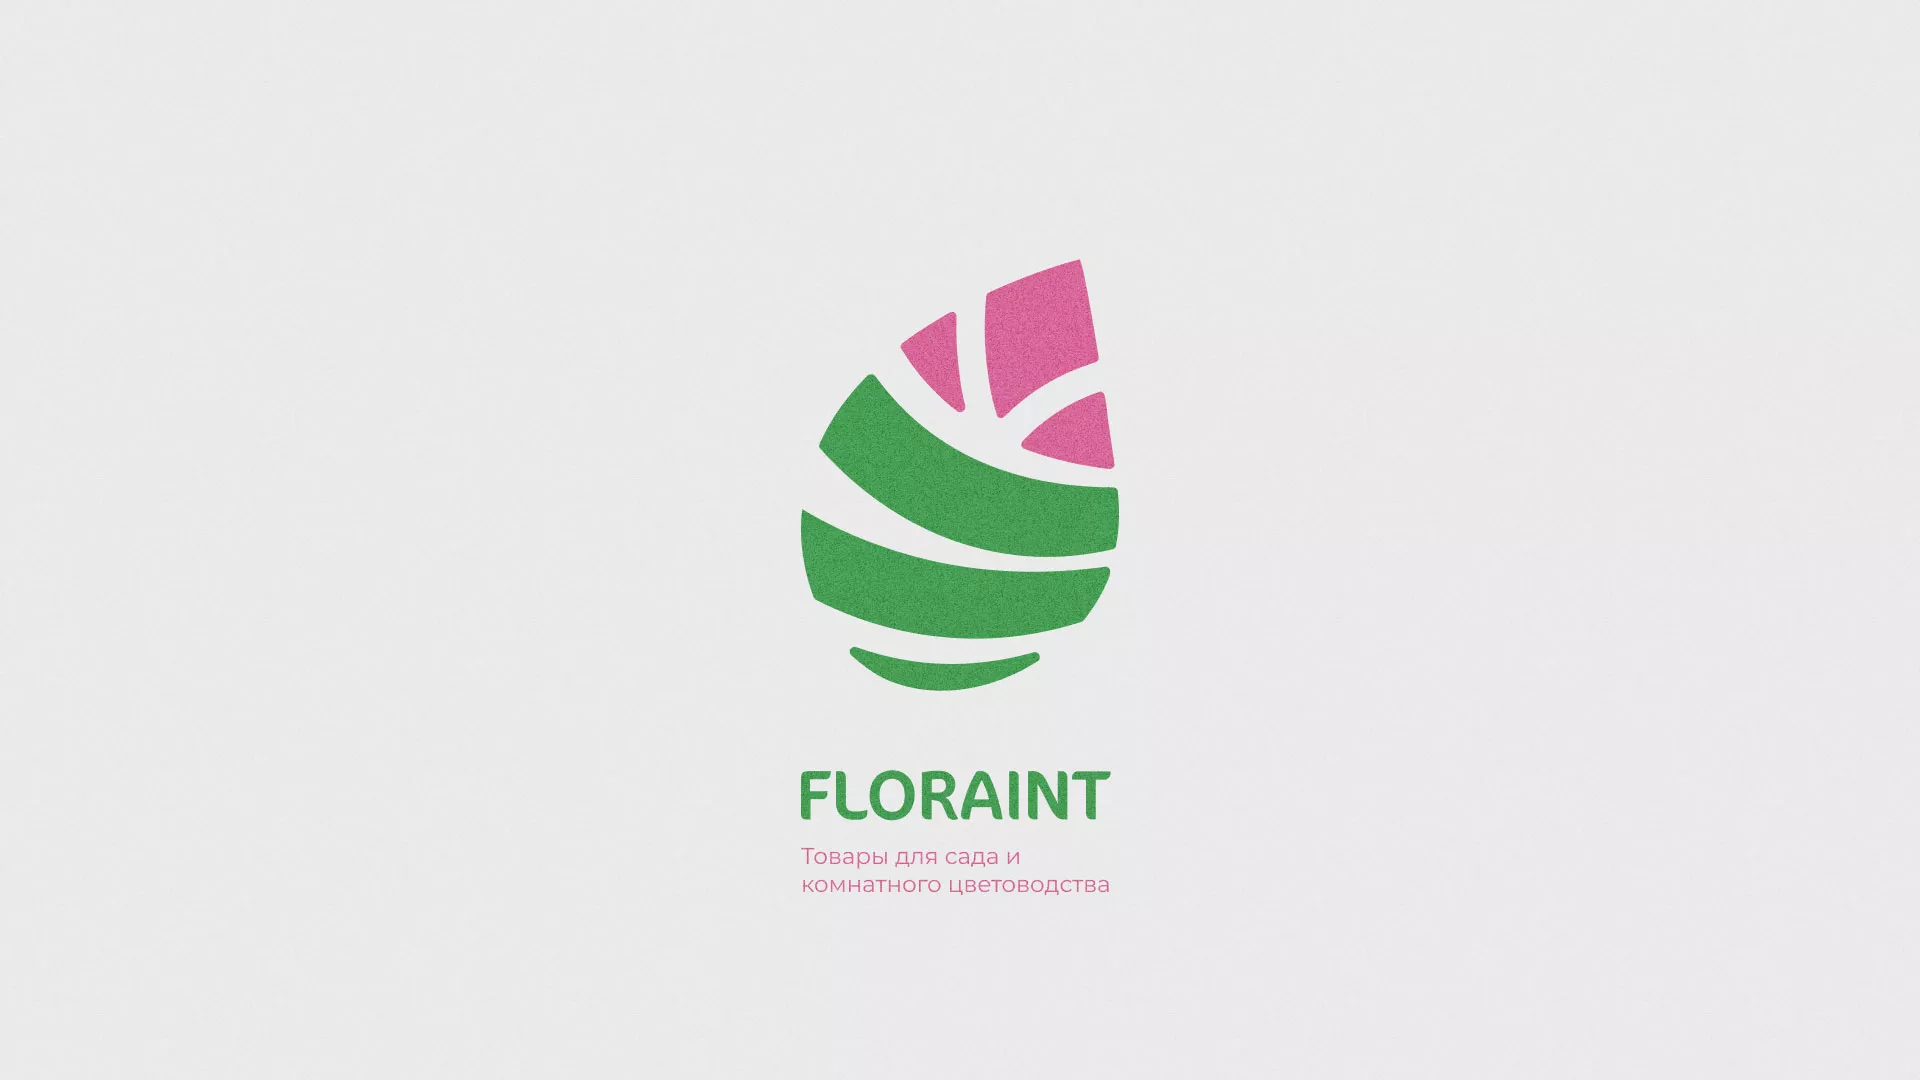 Разработка оформления профиля Instagram для магазина «Floraint» в Вельске